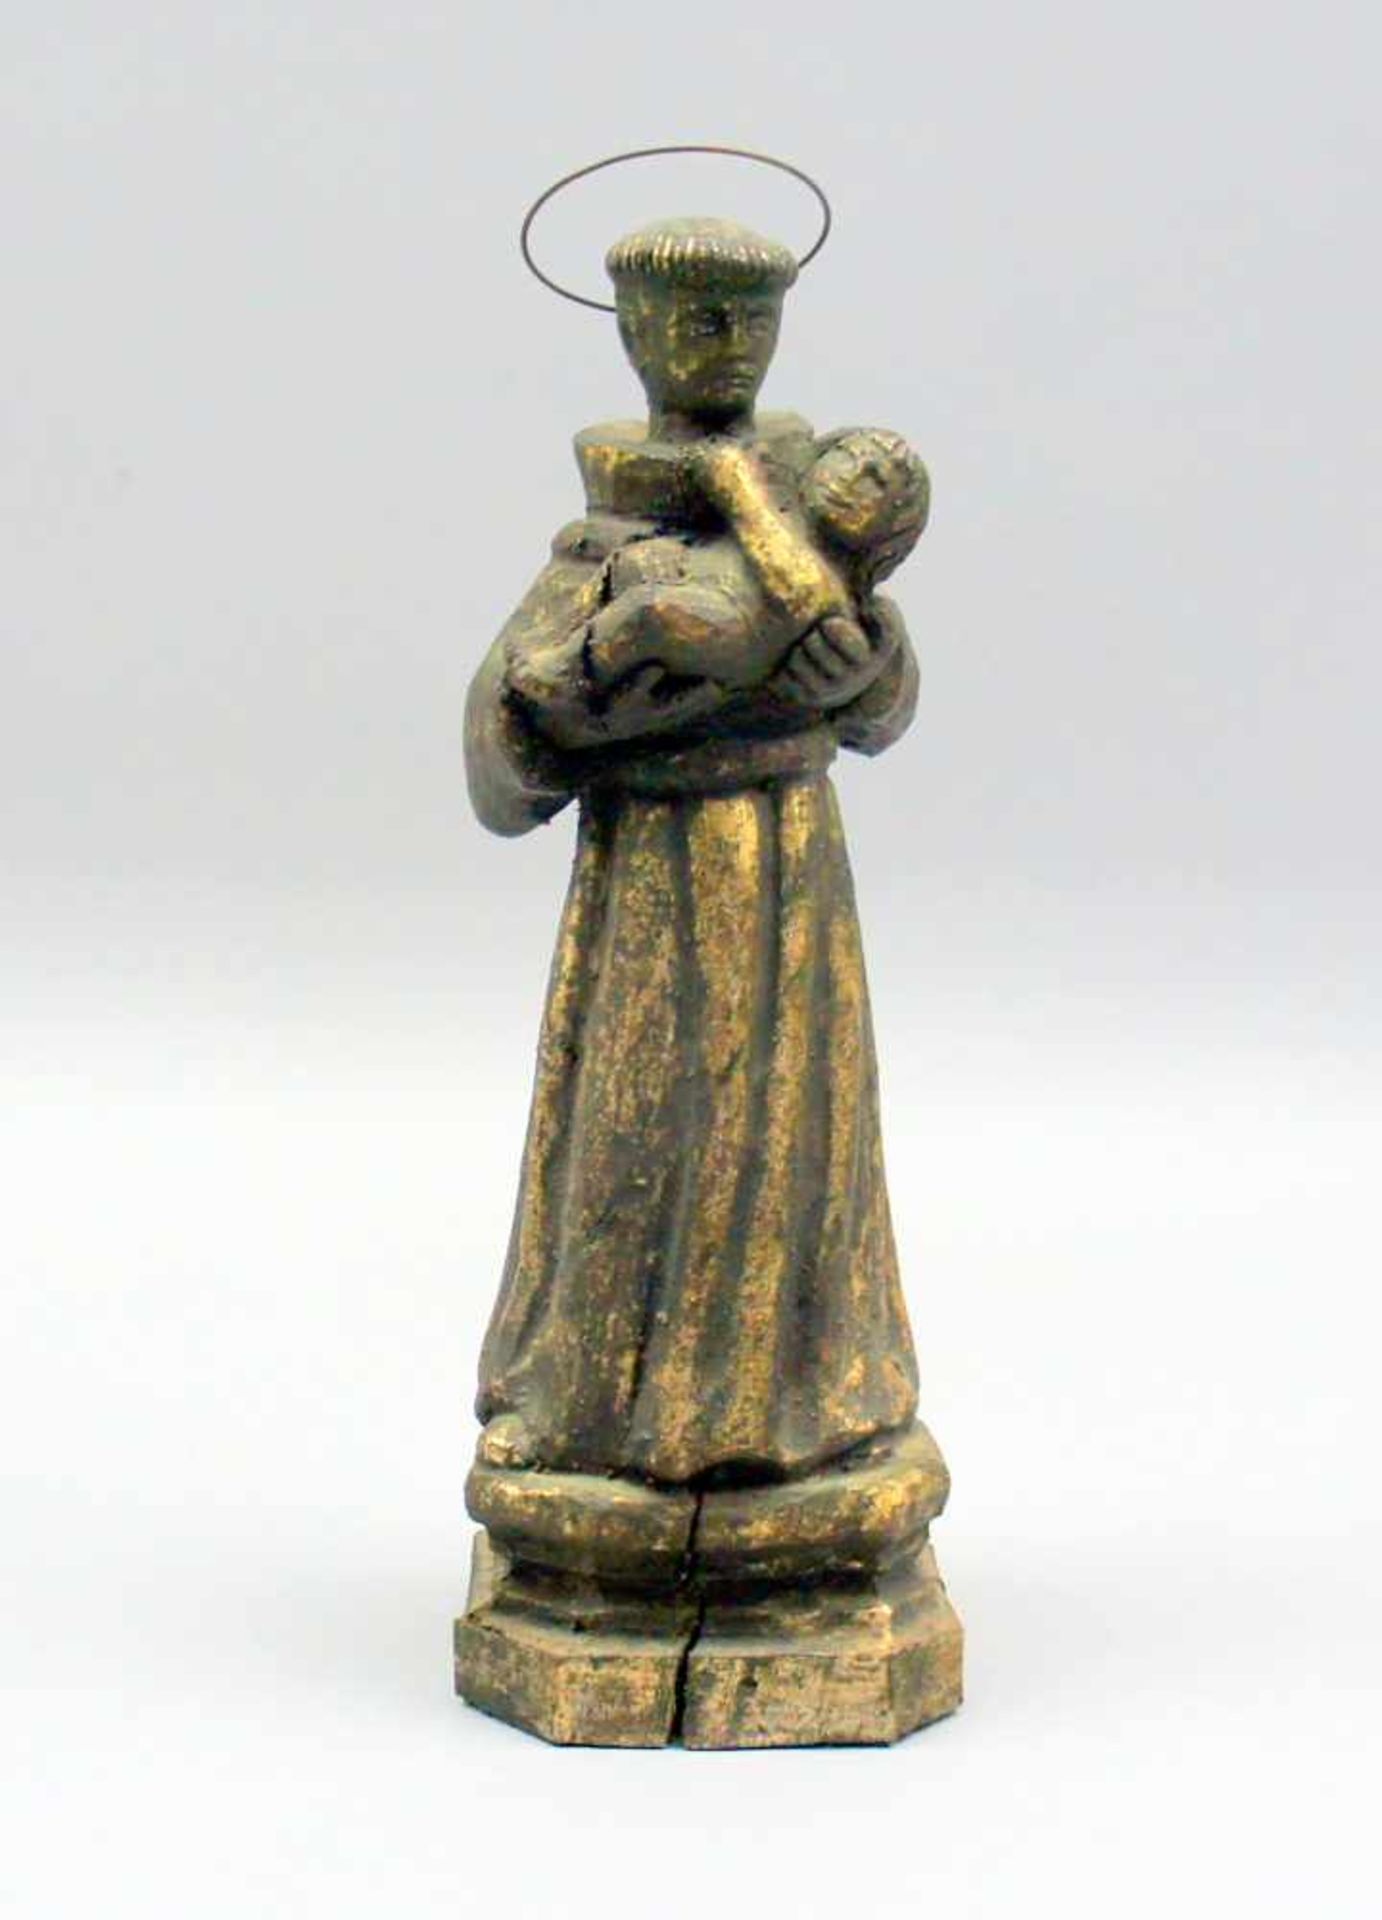 Spanische HeiligenfigurHolz geschnitzt/Metall. Auf Sockel stehender Mönch mit metallenem Nimbus, auf